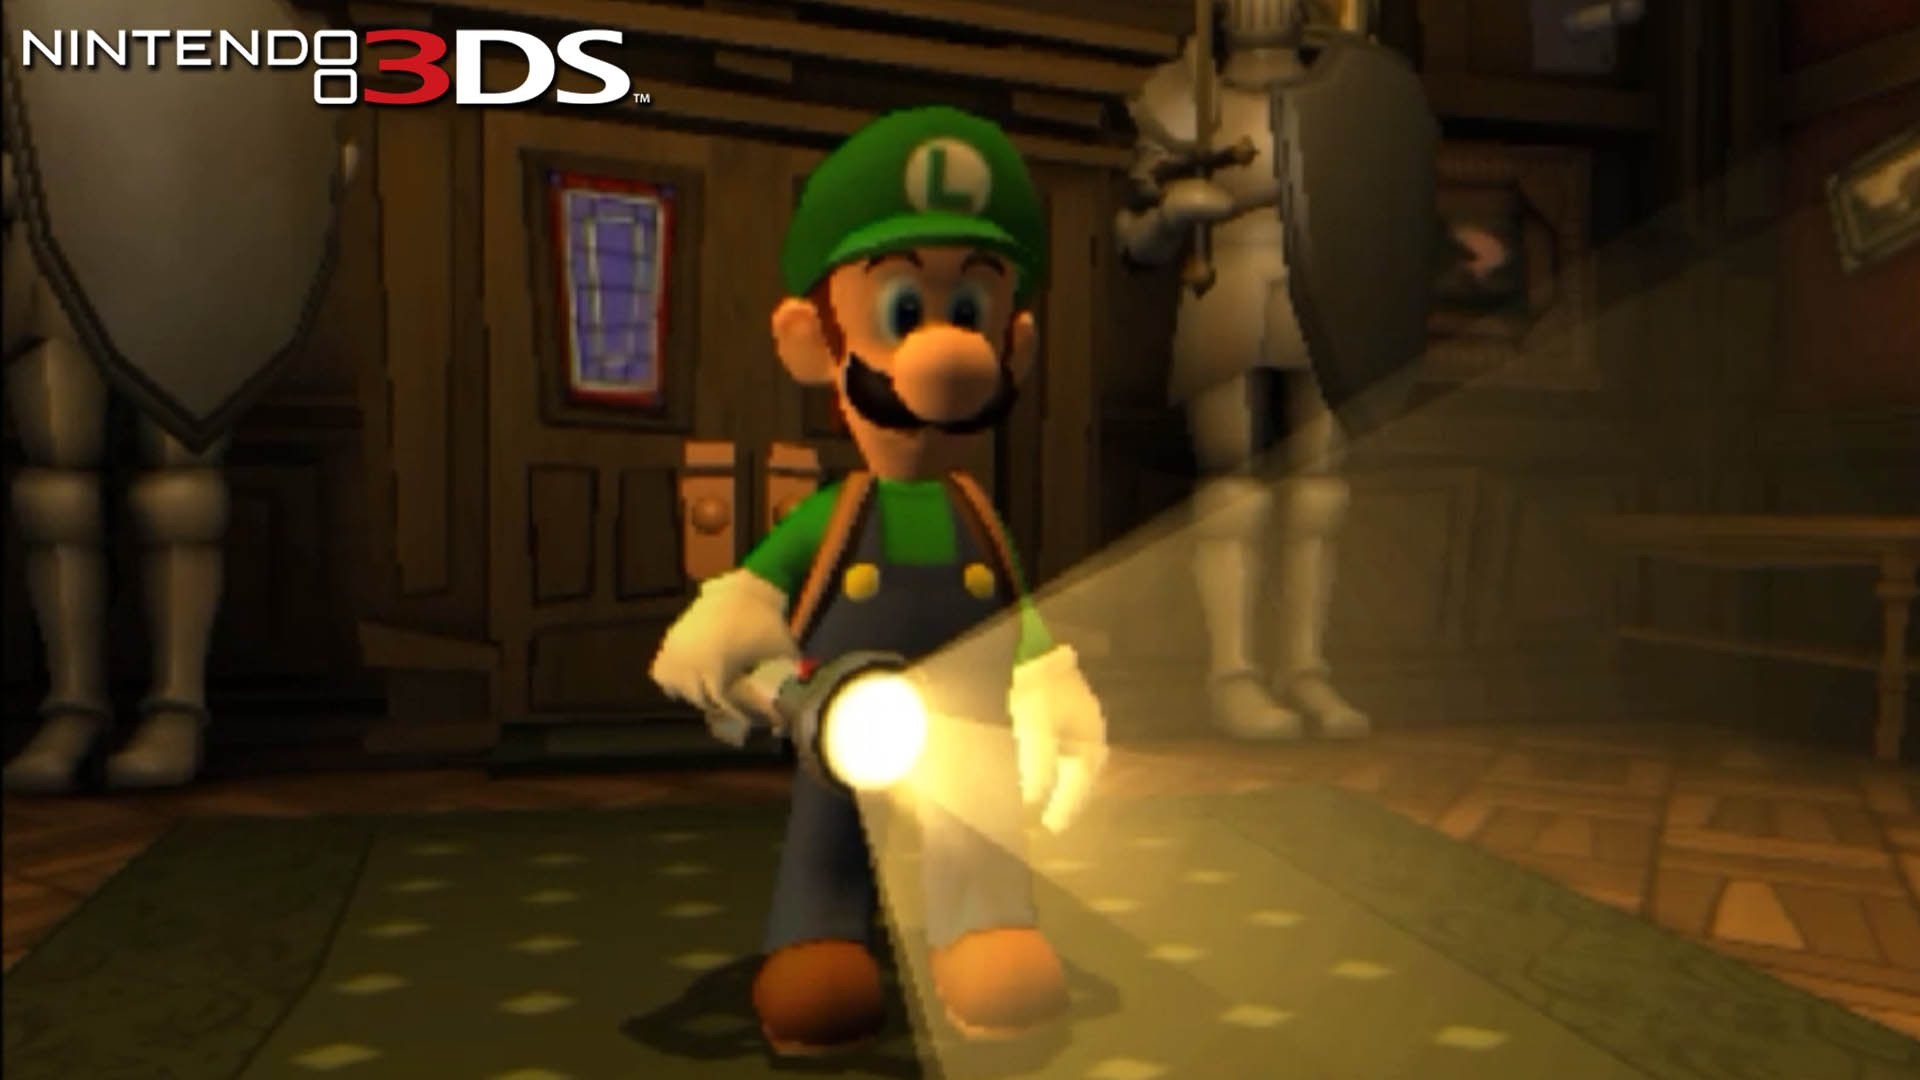 1920x1080 Luigi's Mansion: Dark Moon - Gameplay Nintendo 3DS Capture Card - YouTube